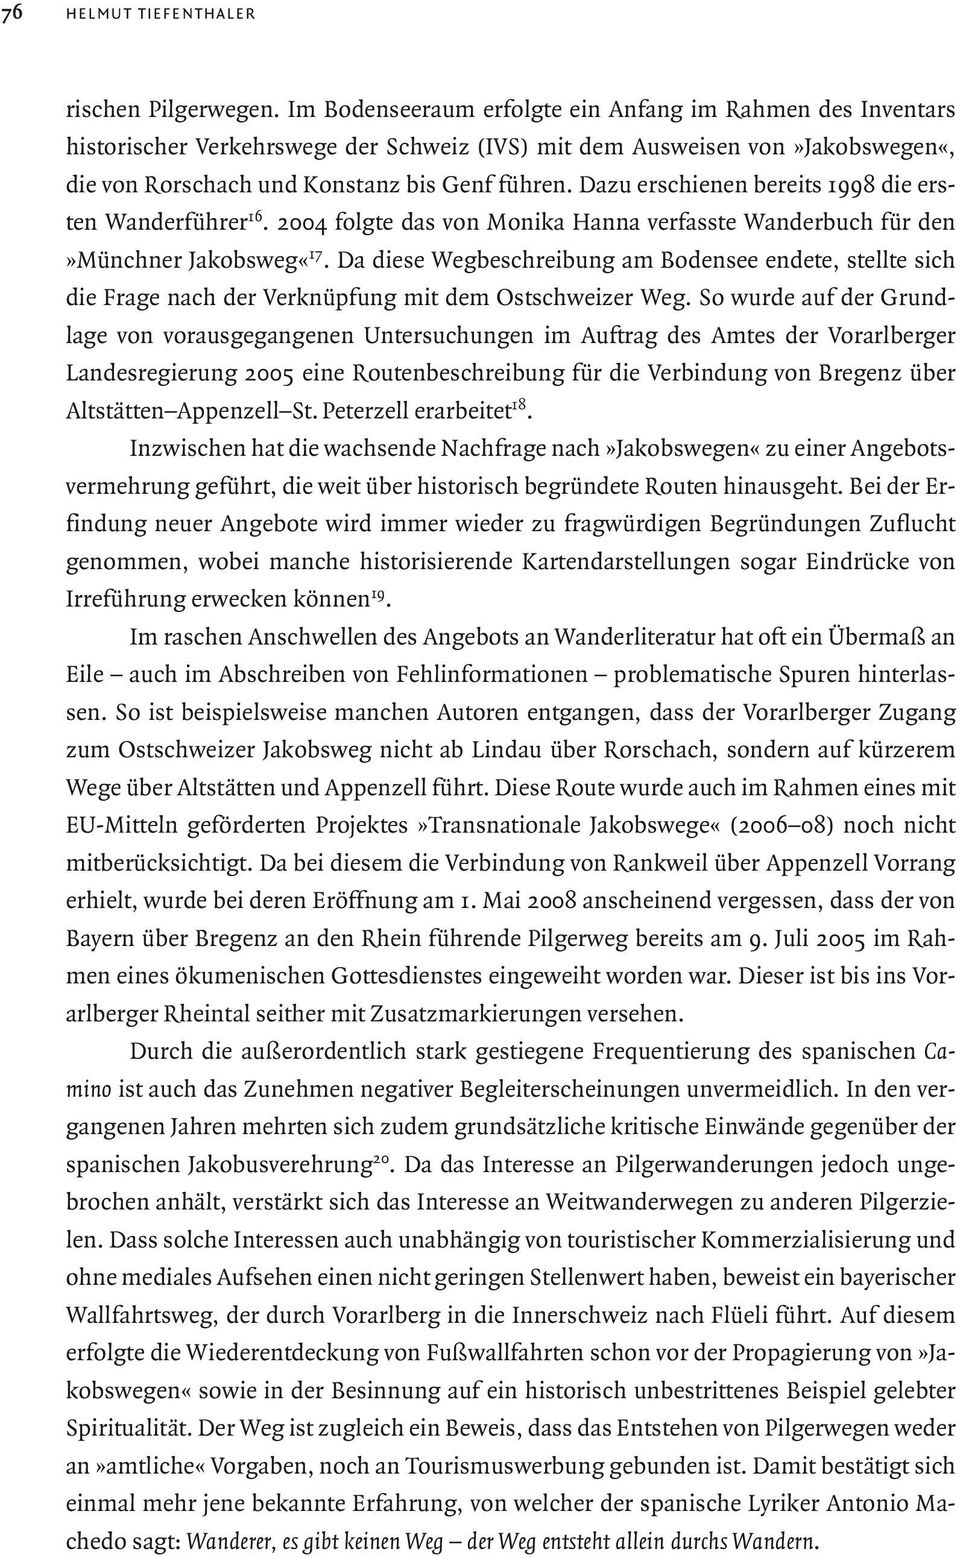 Dazu erschienen bereits 1998 die ersten Wanderführer 16. 2004 folgte das von Monika Hanna verfasste Wanderbuch für den»münchner Jakobsweg«17.